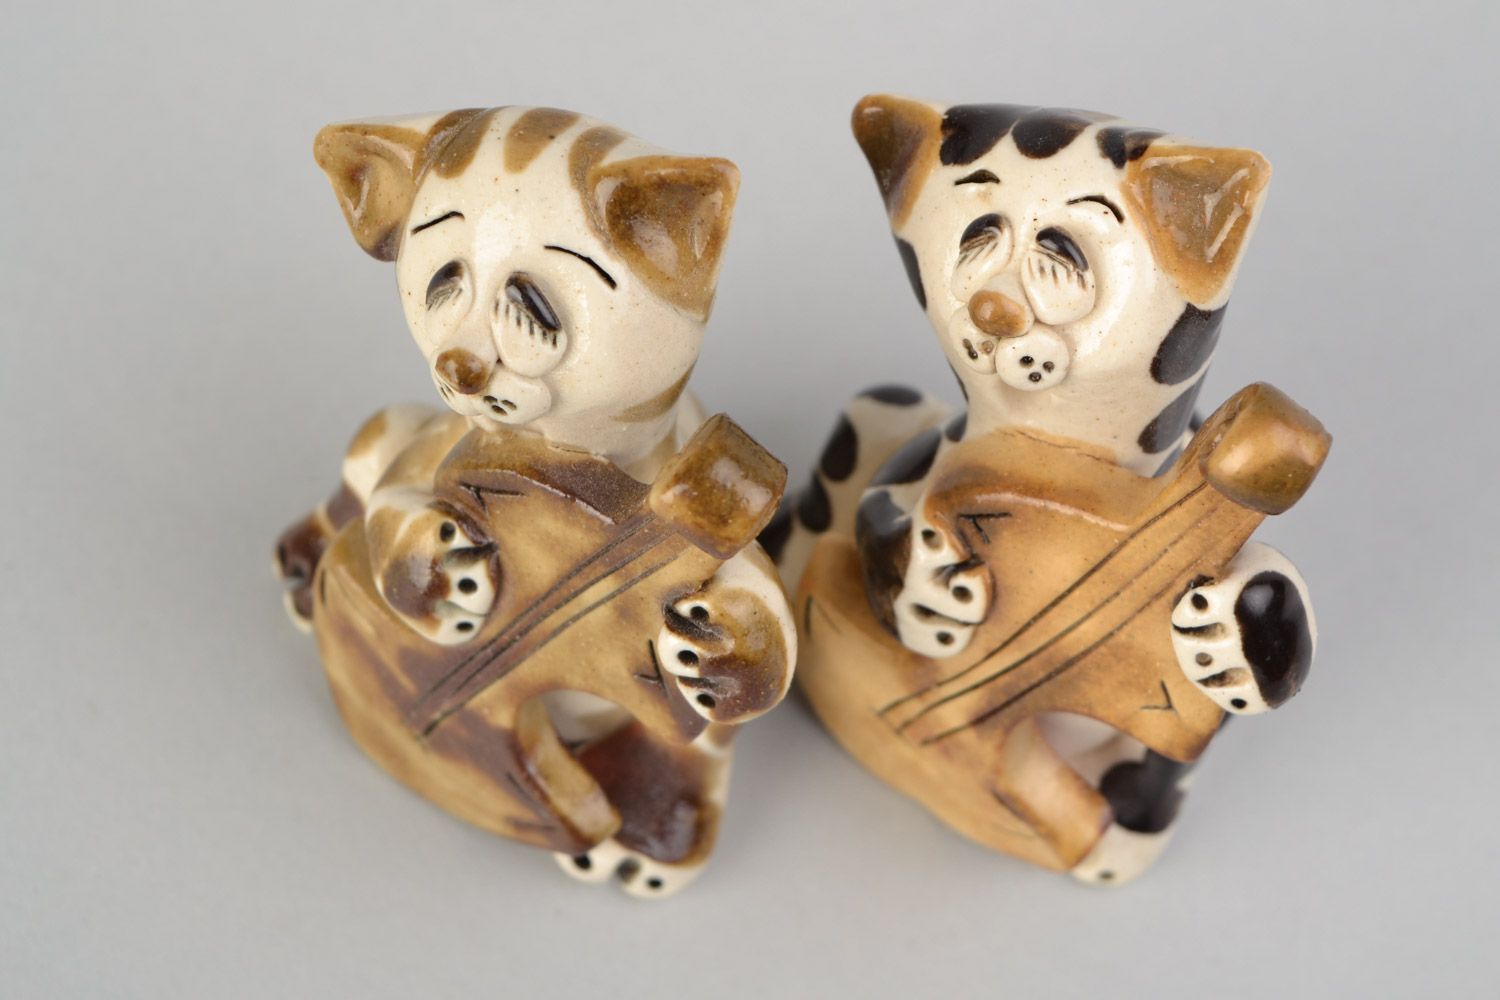 Handmade cute ceramic figurines 2 pieces funny cats for interior decor photo 3